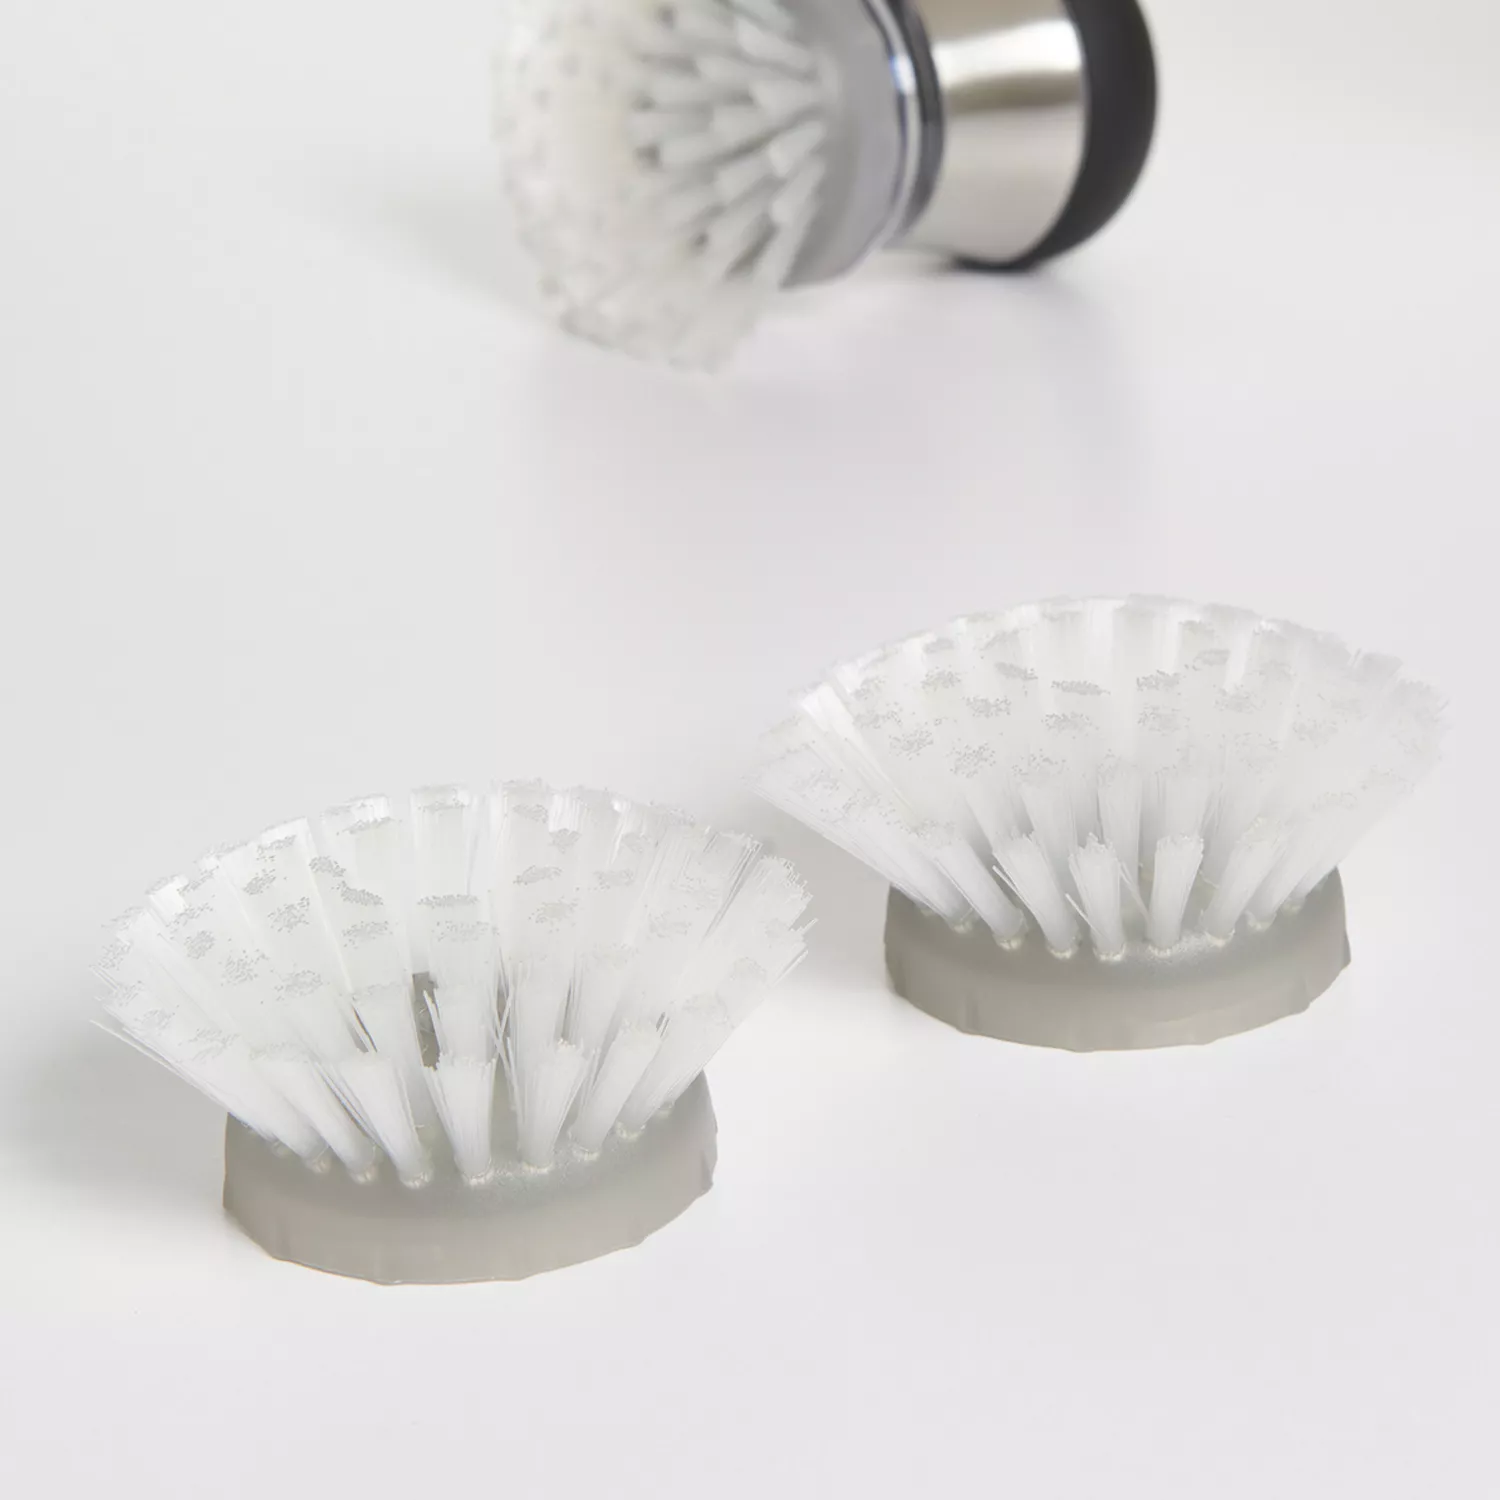 OXO Good Grips Soap Dispensing Dish Brush Refills - 2 Pack